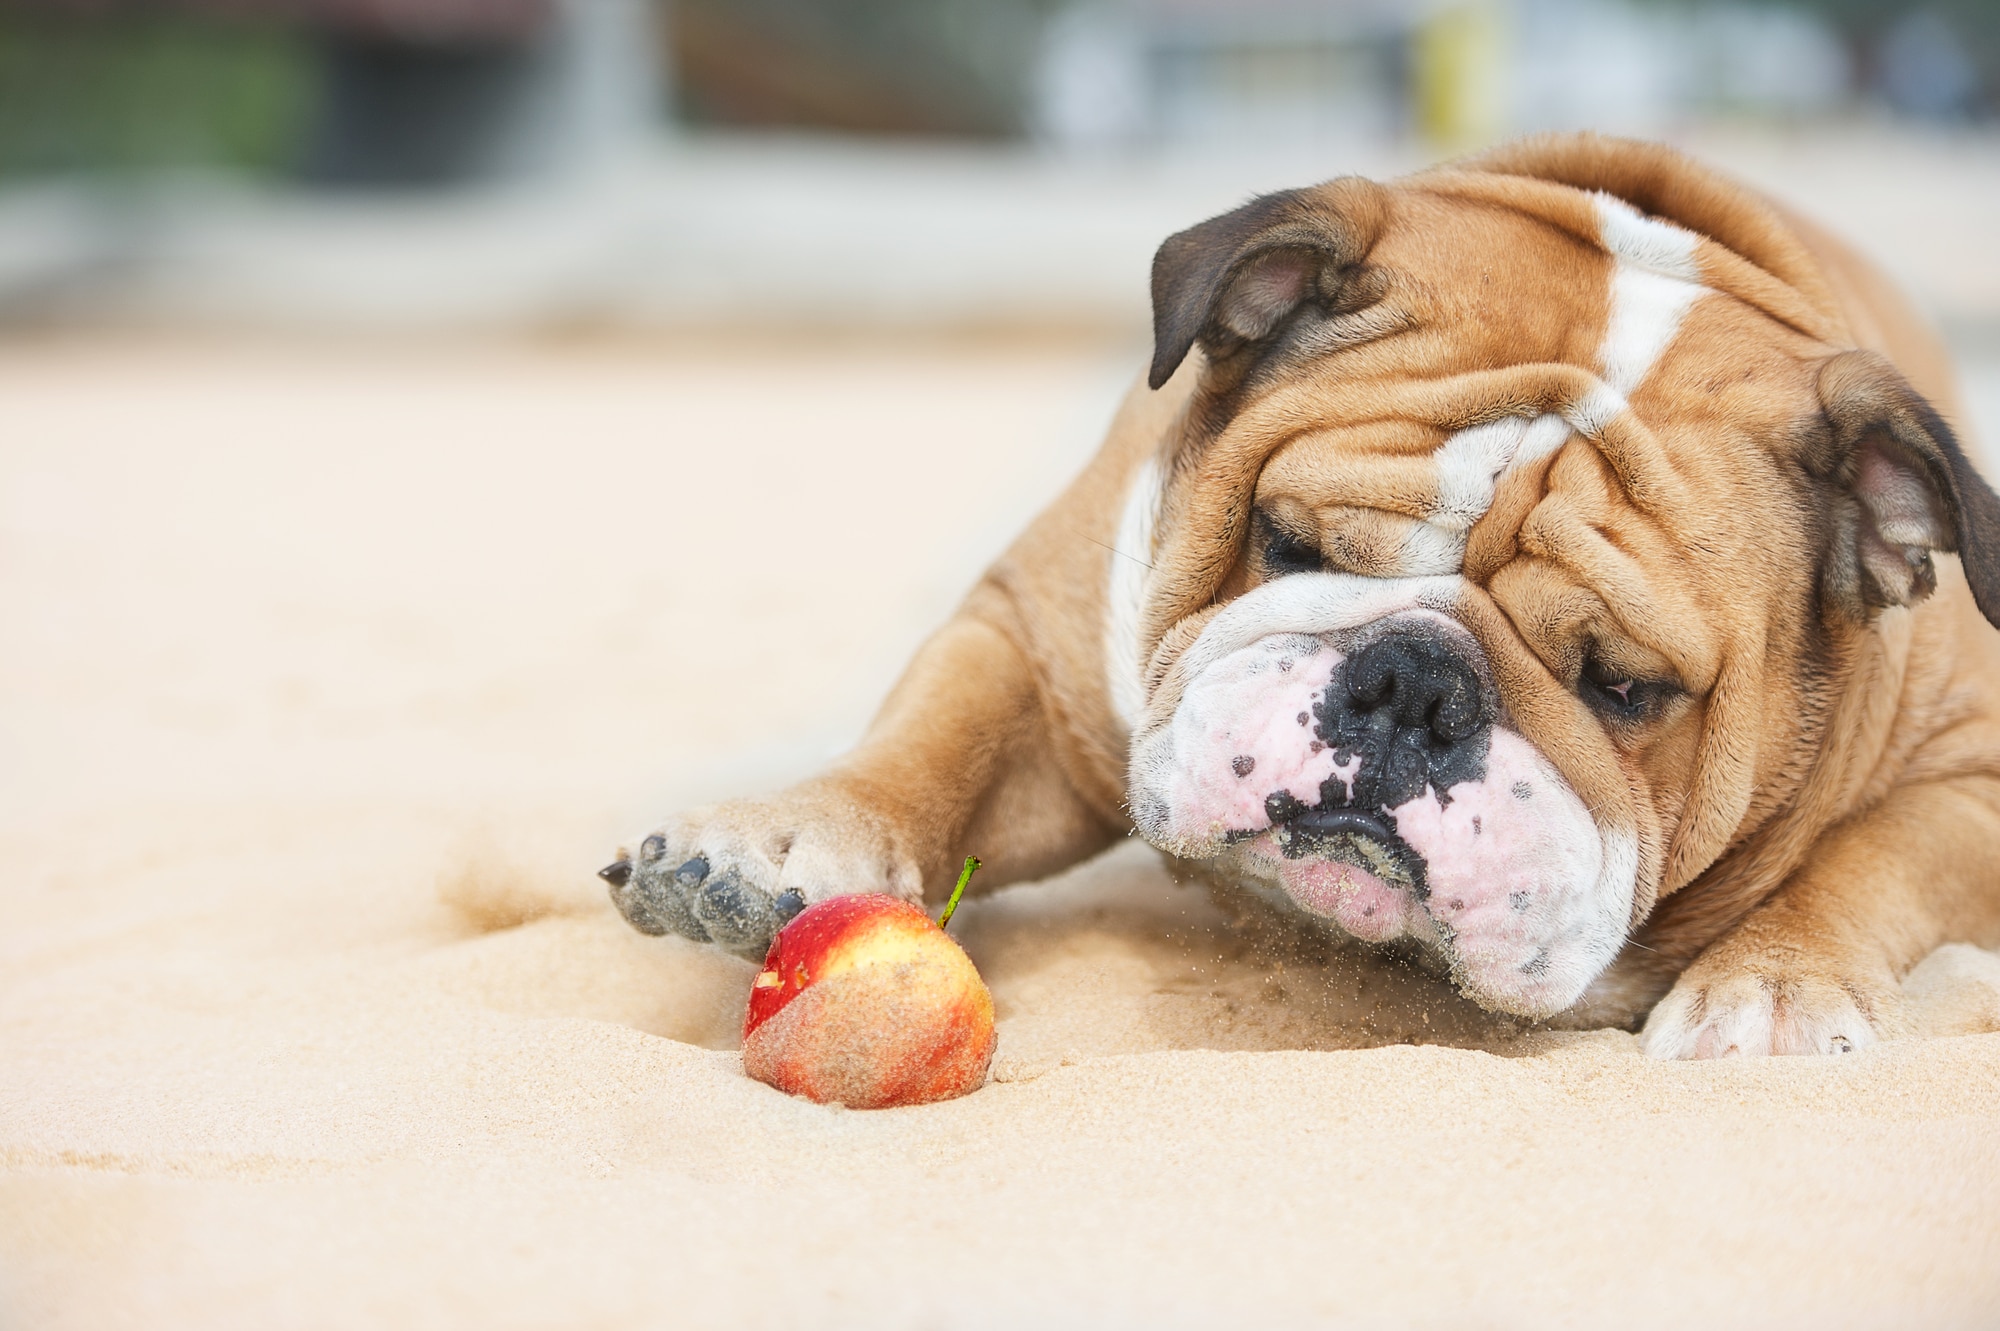 Multiplikation moronic montering Dürfen Hunde Apfel und Banane essen? Ein Vitaminreich für dein Dog. - DEIN  DOG